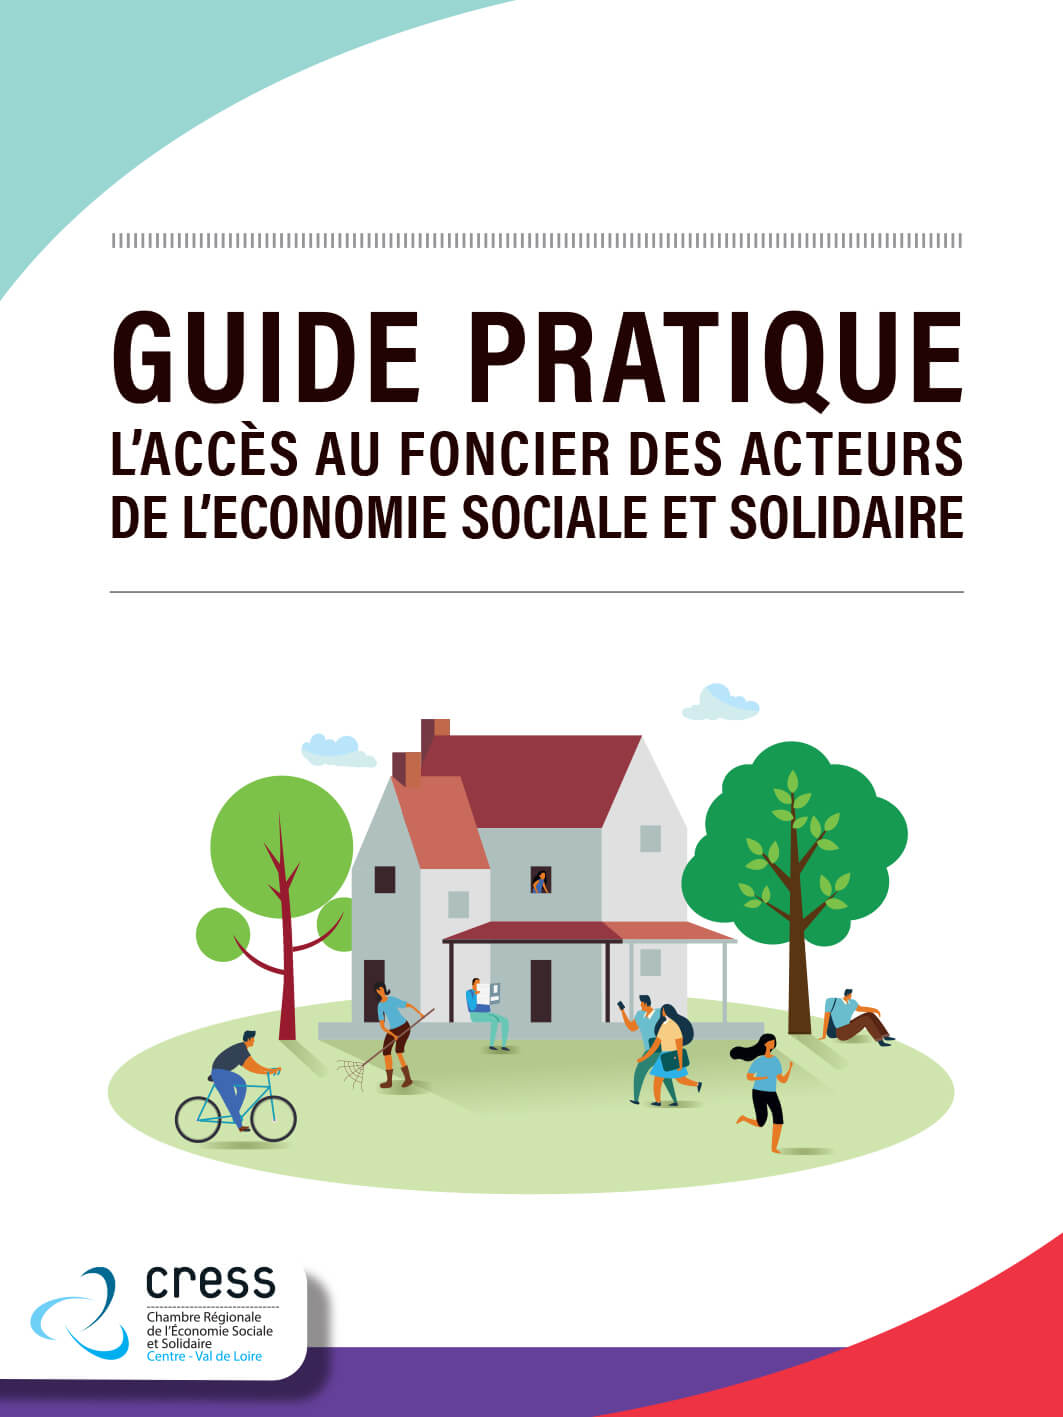 Guide pratique l’accès au foncier des acteurs de l’économie sociale et solidaire